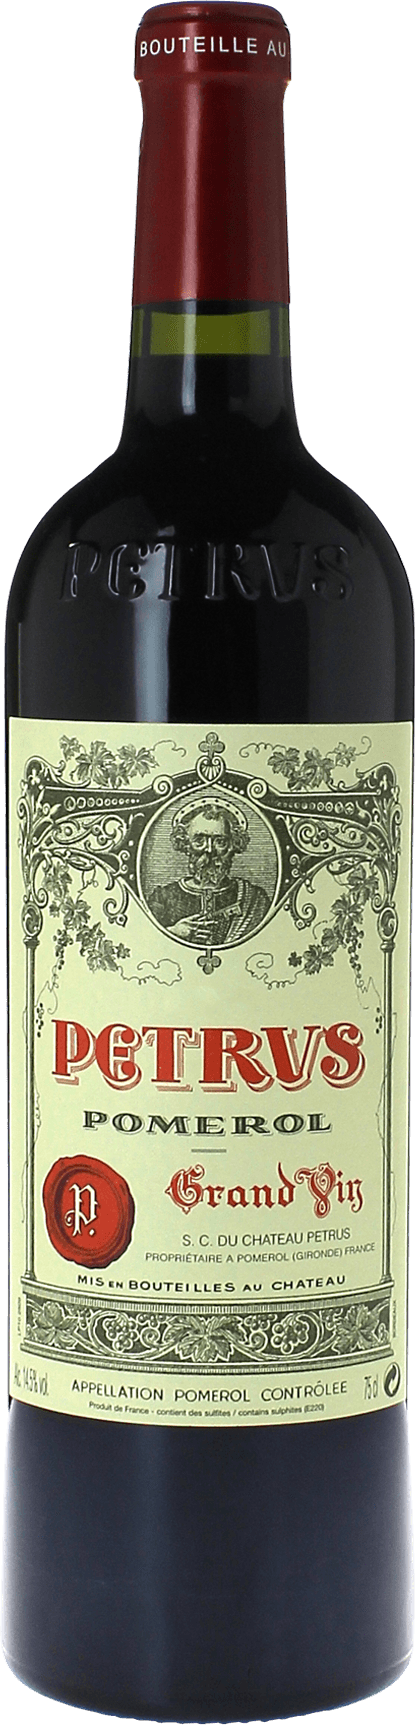 Petrus 2012  Pomerol, Bordeaux rouge